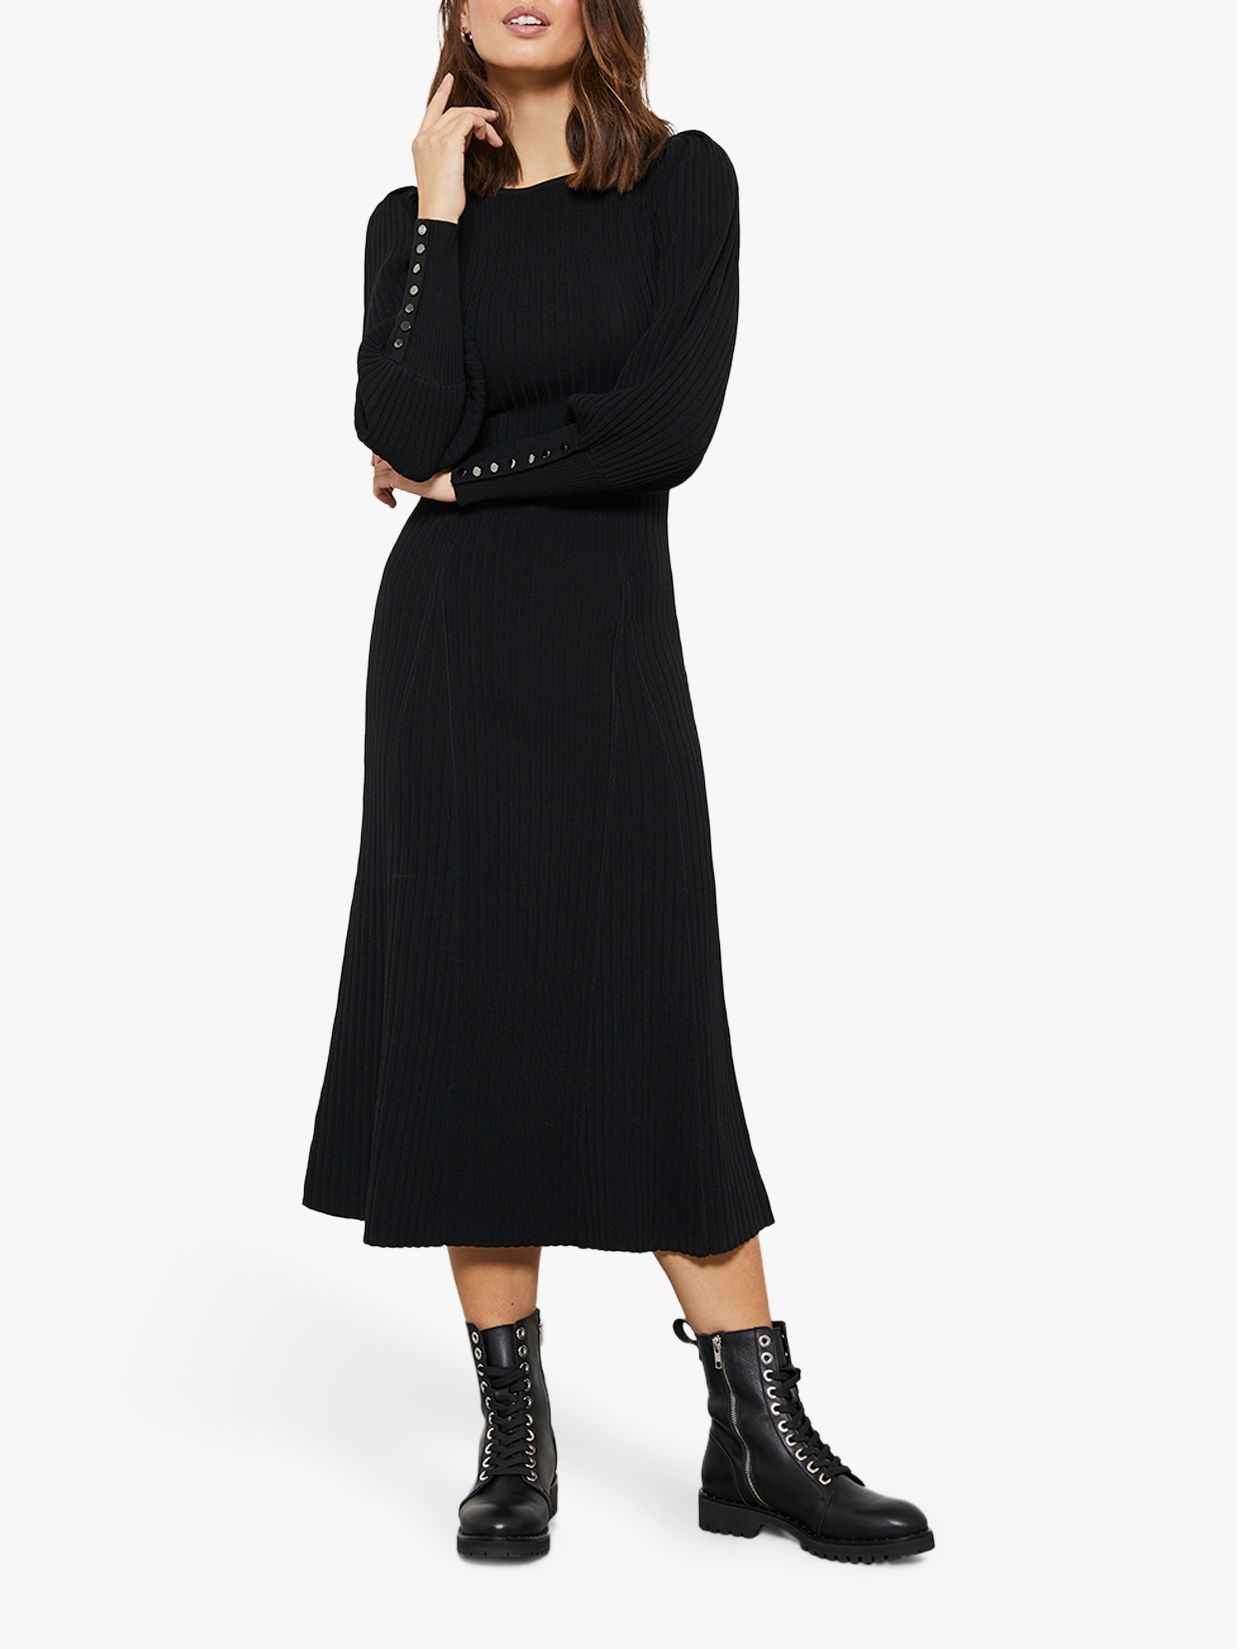 knitted black midi dress